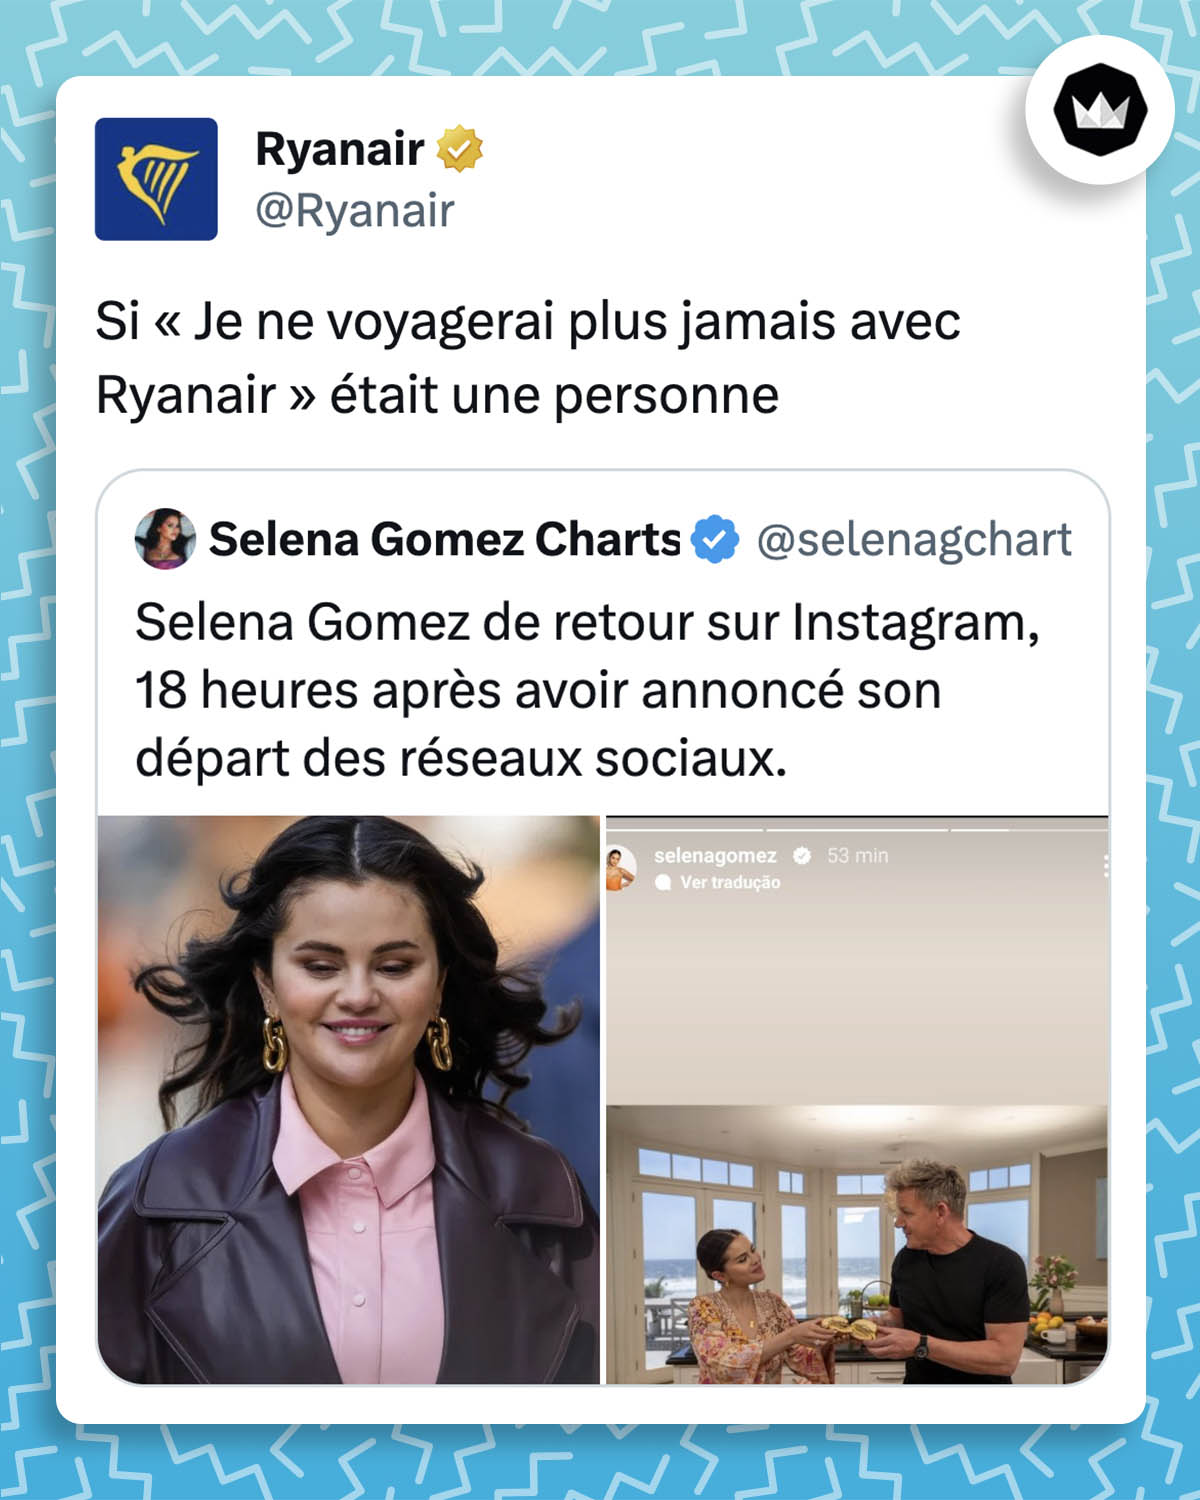 selenagchart : Selena Gomez de retour sur Instagram, 18 heure après avoir annoncé son départ des réseaux sociaux. Ryanair : Si « Je ne voyagerai plus jamais avec Ryanair » était une personne